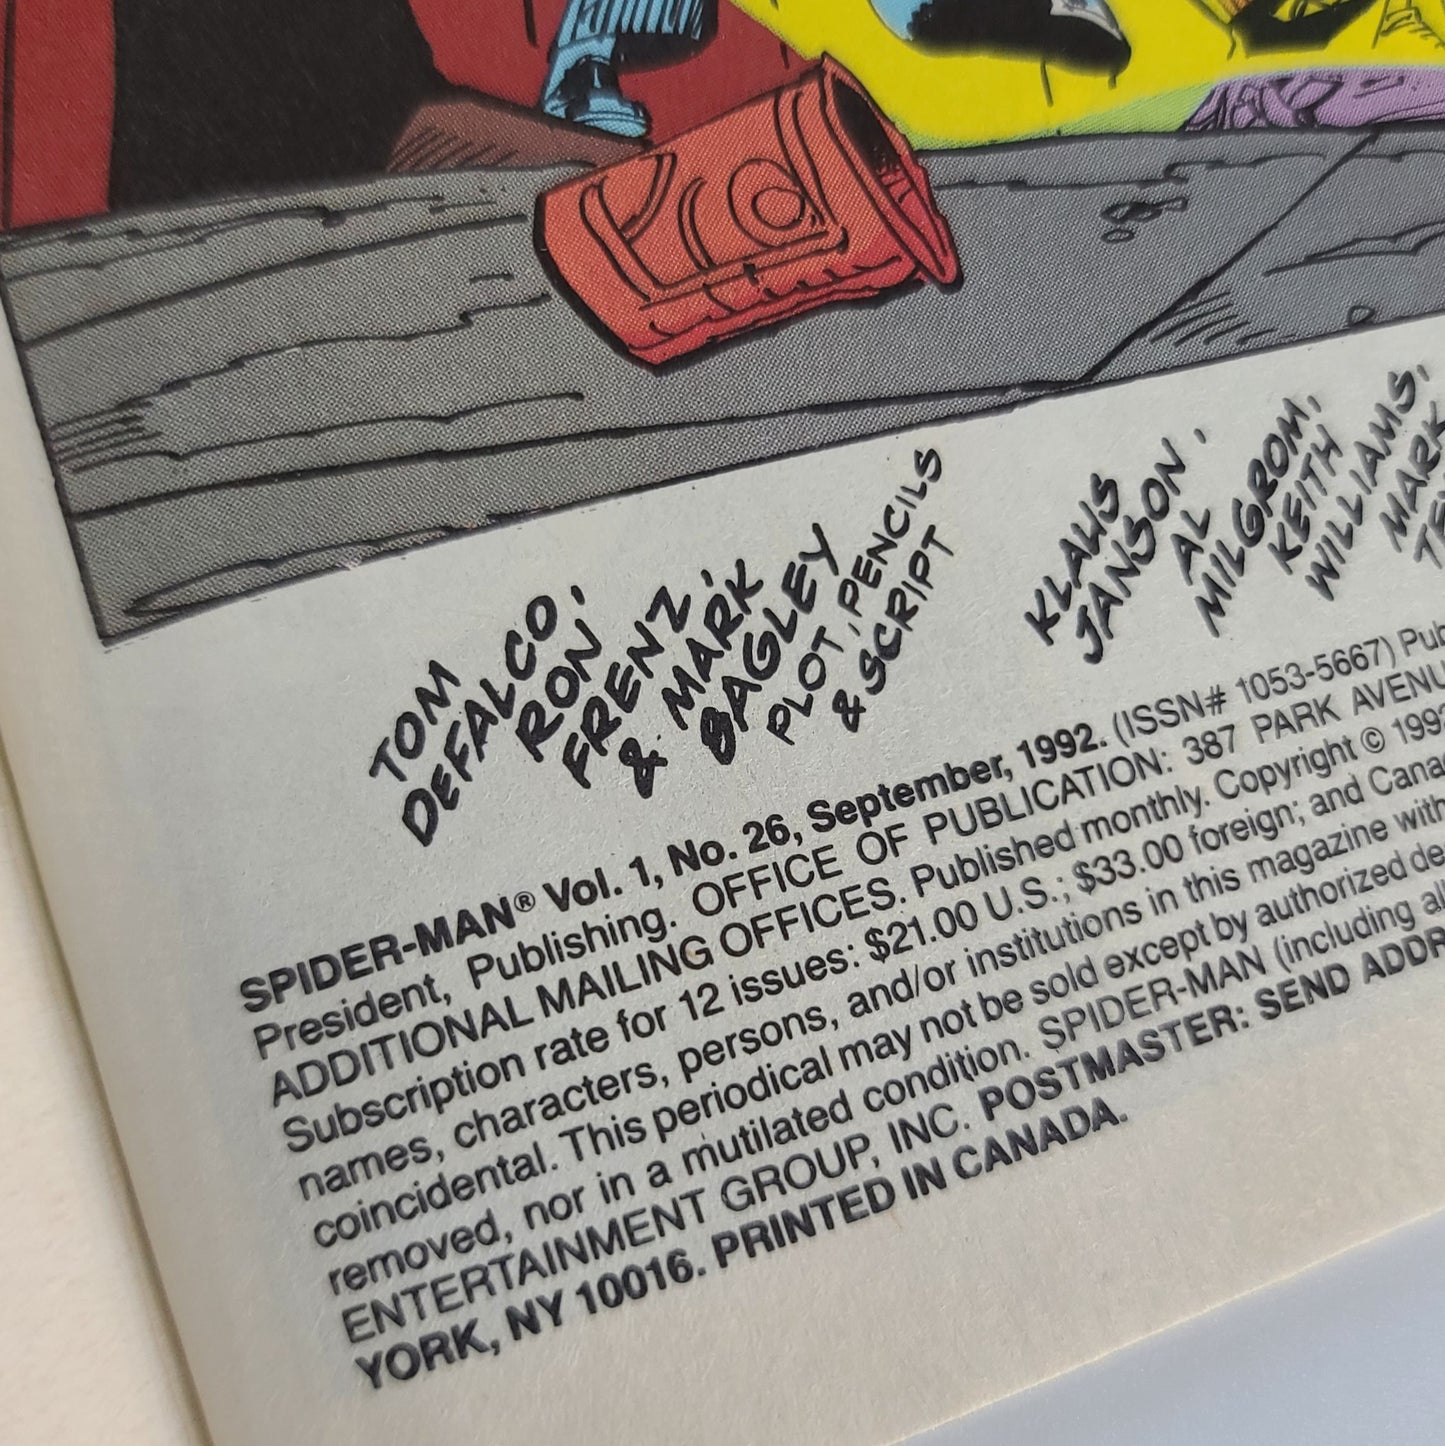 Spider-Man #26 (1992)